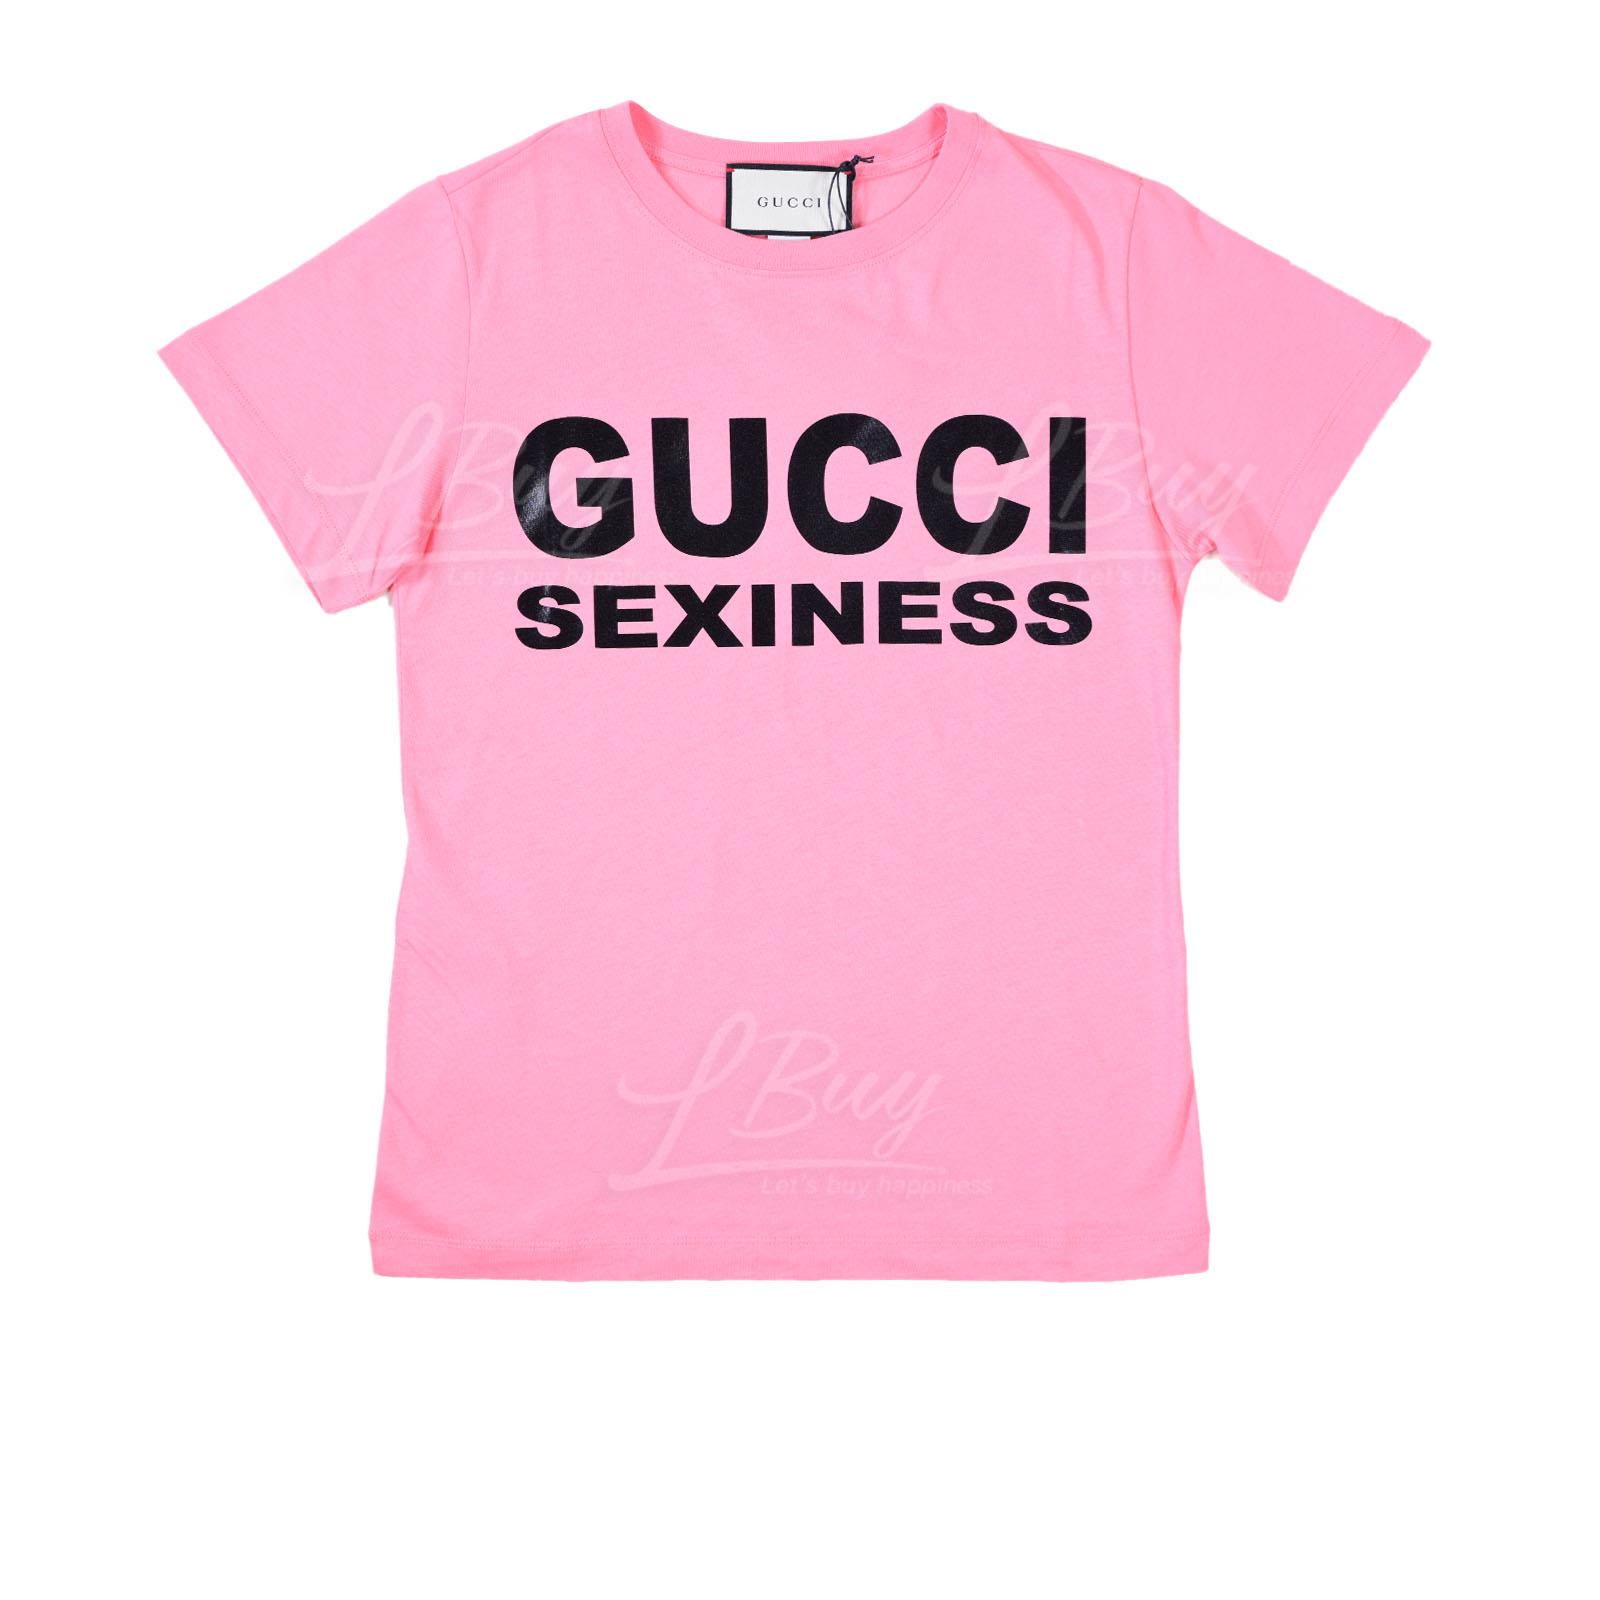 Gucci Sexiness 短袖T恤 粉红色